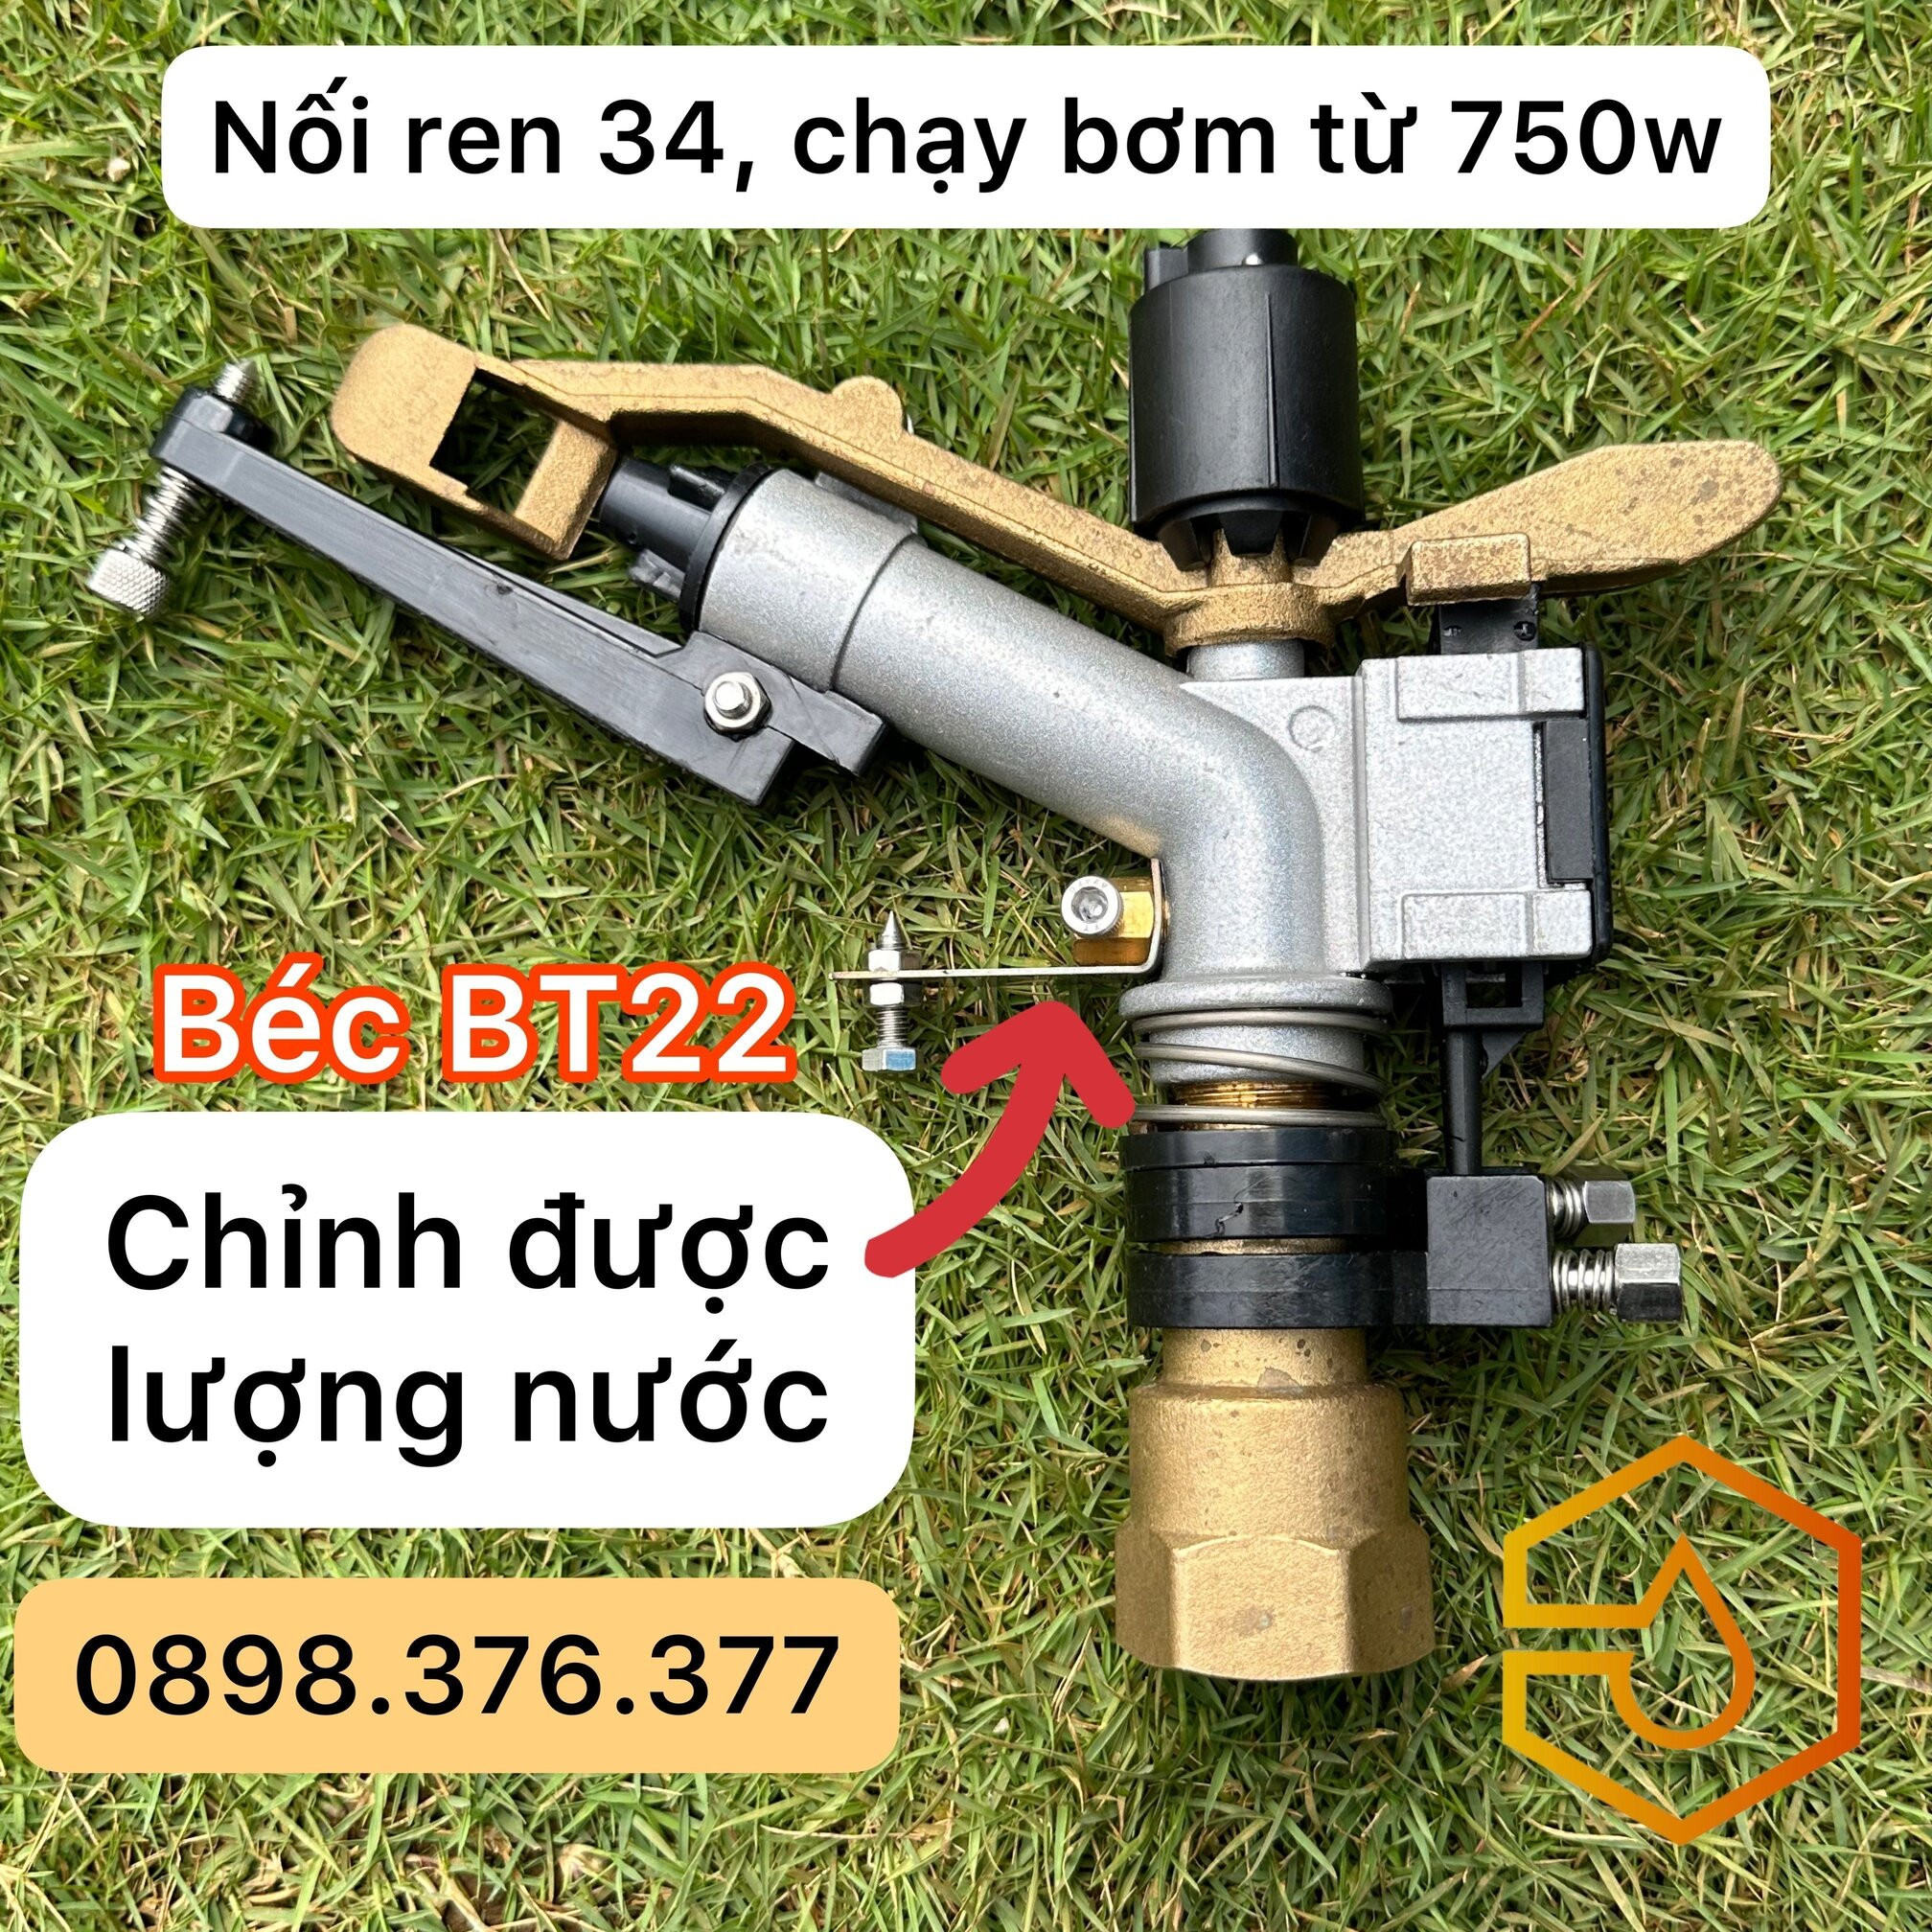 béc BT22 - béc tưới phun mưa gắn ống 34 chạy bơm 750w 0.75kw 1hp